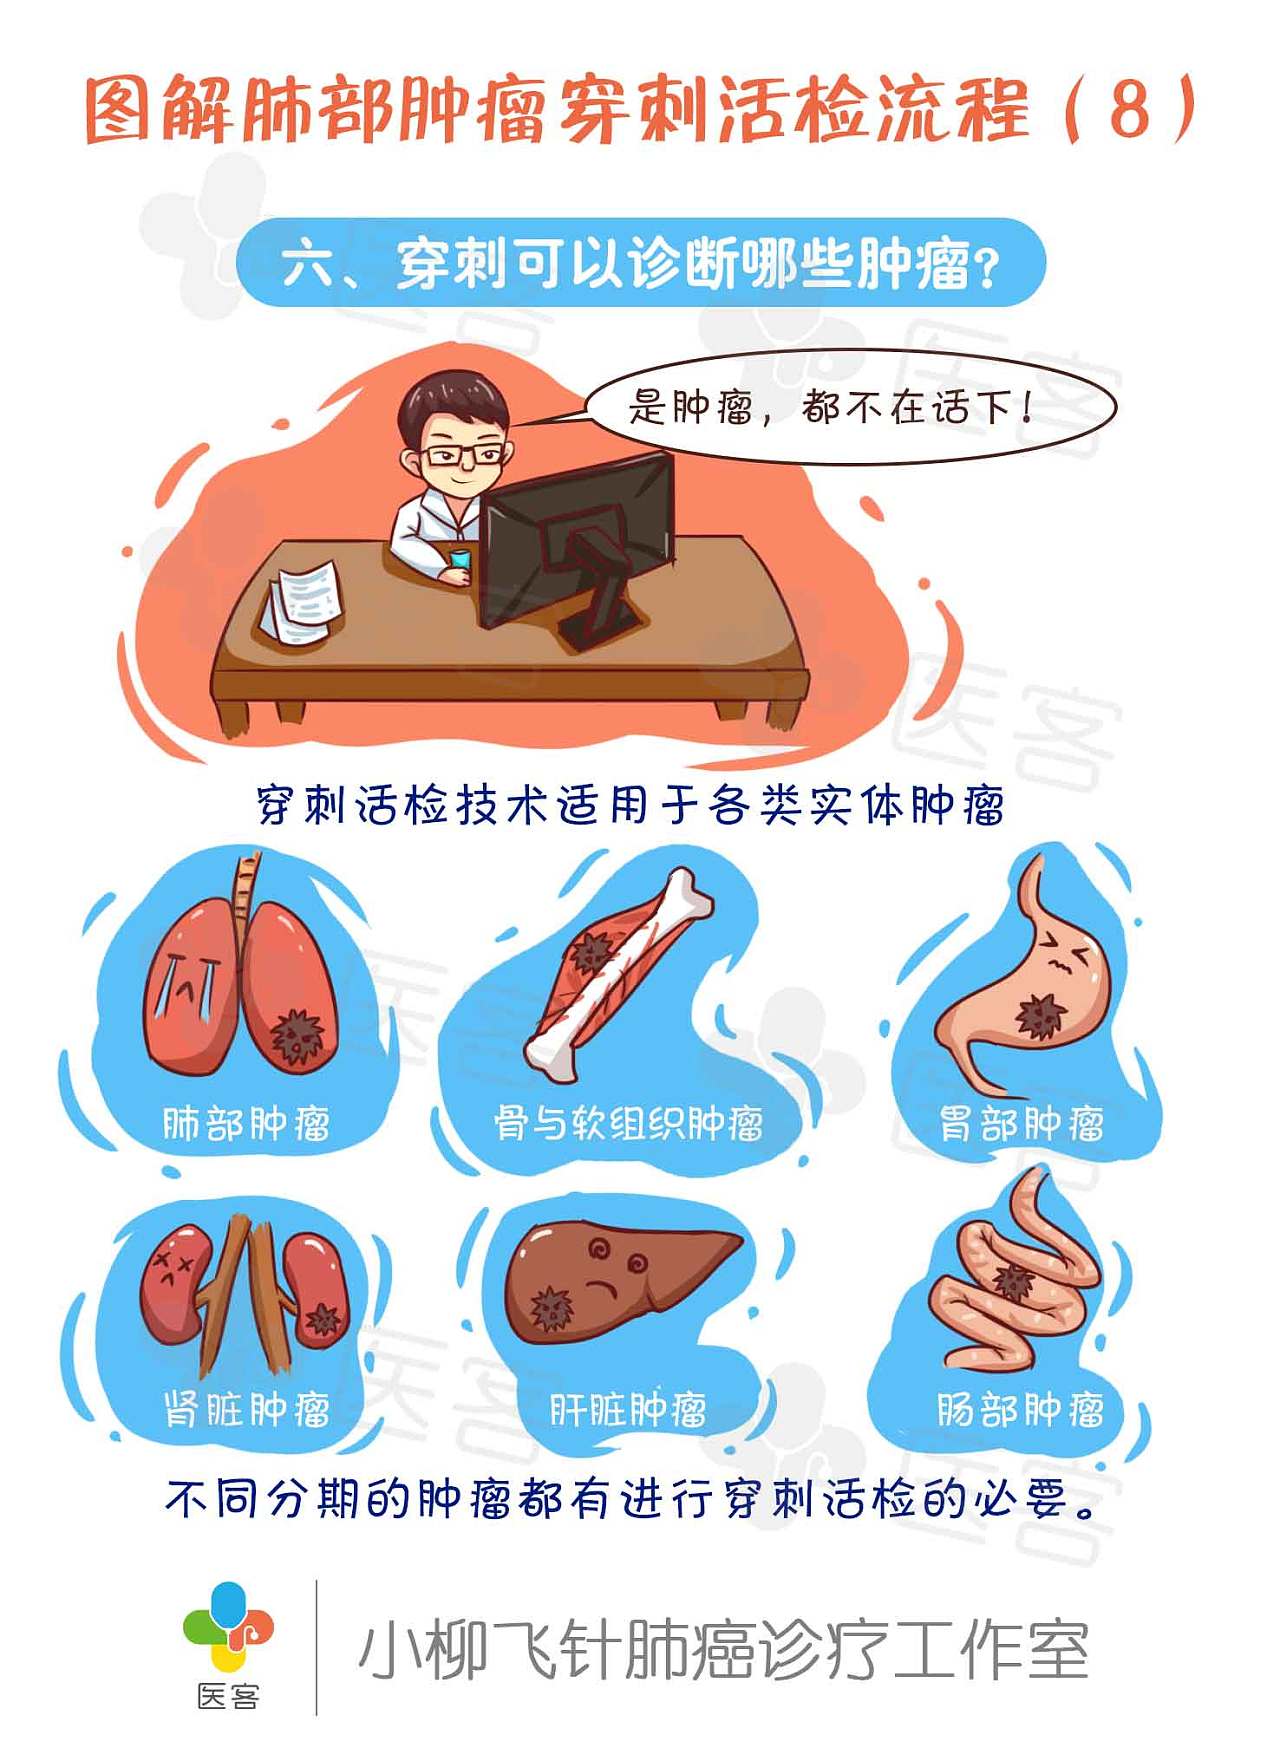 客工作室】医疗科普漫画:图解肺部肿瘤穿刺活